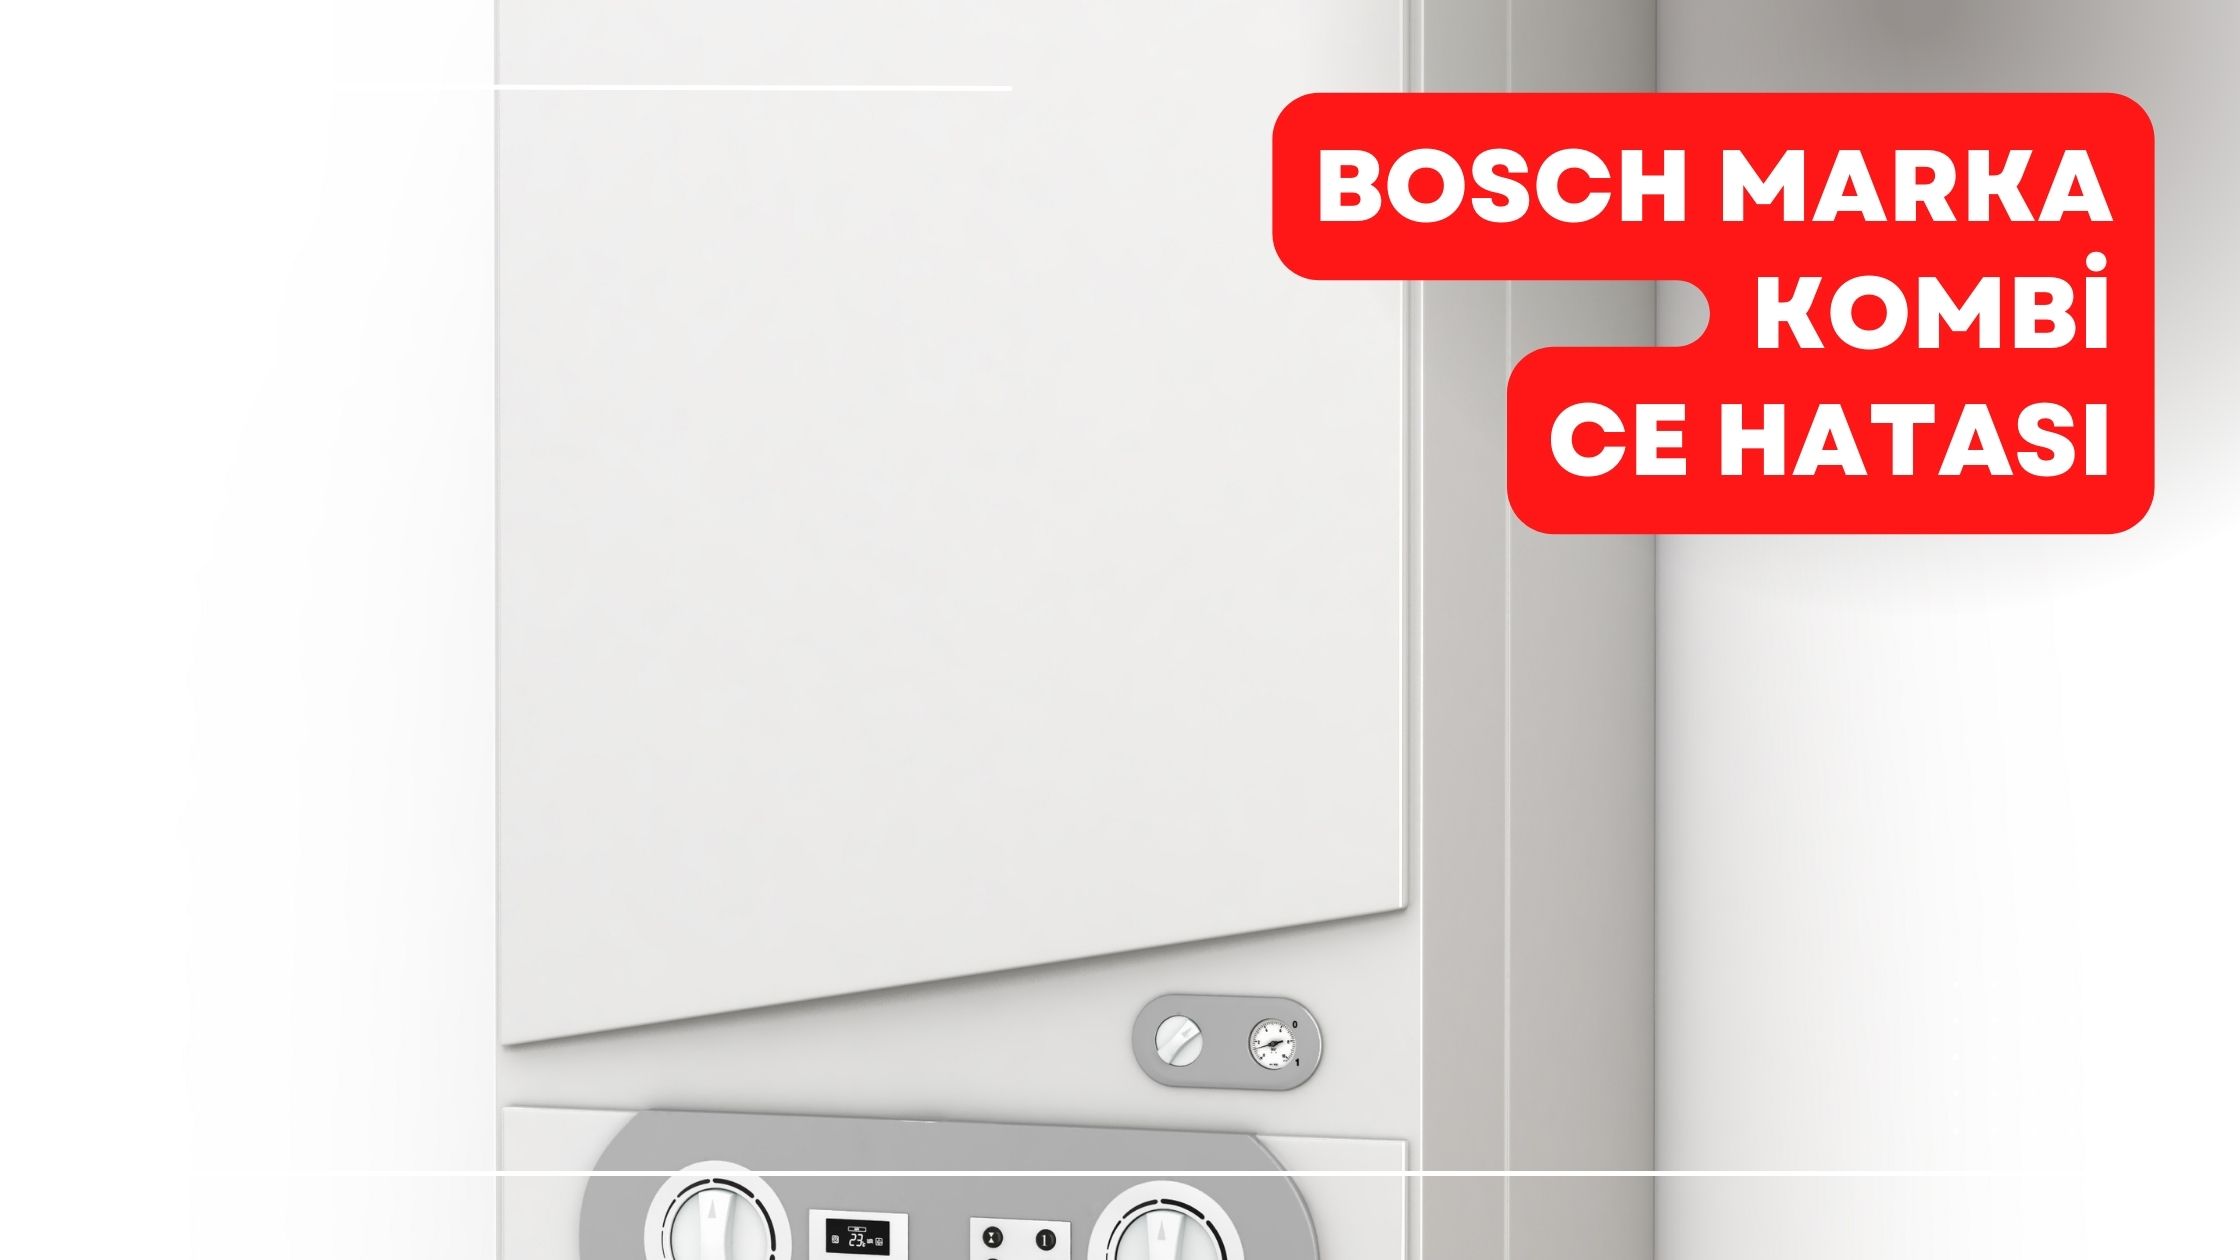 Bosch Marka Kombi CE Hatası